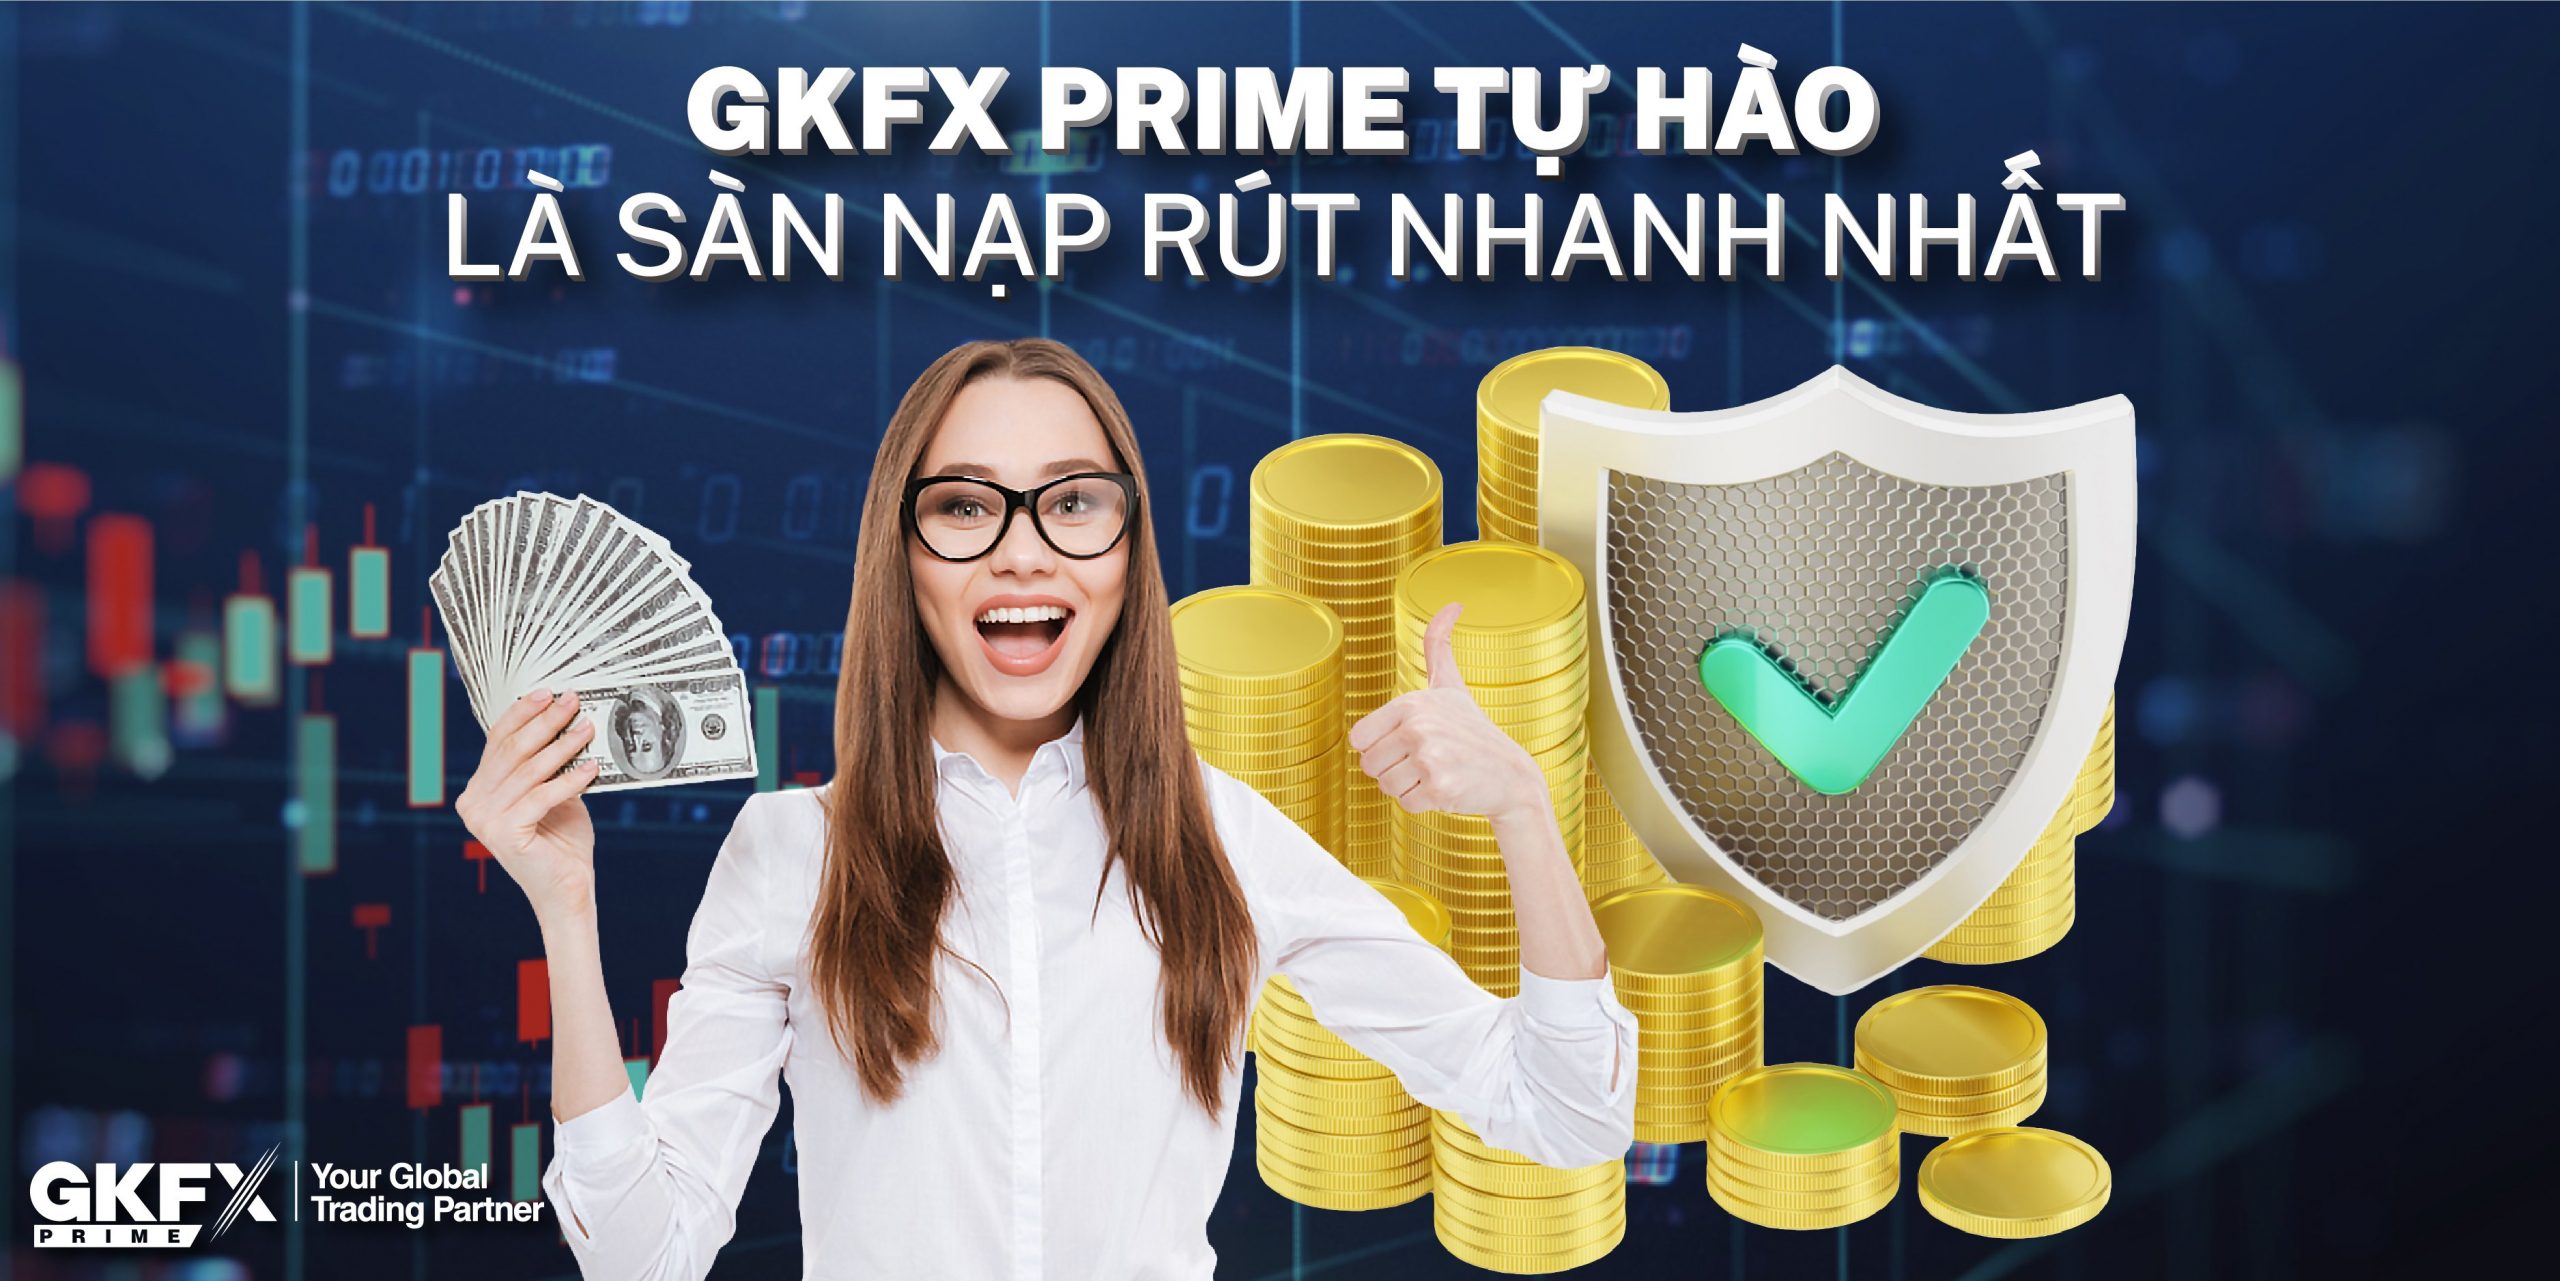 GKFX Prime - Sàn Forex Nạp Rút Nhanh Nhất Việt Nam - vtradetop.com